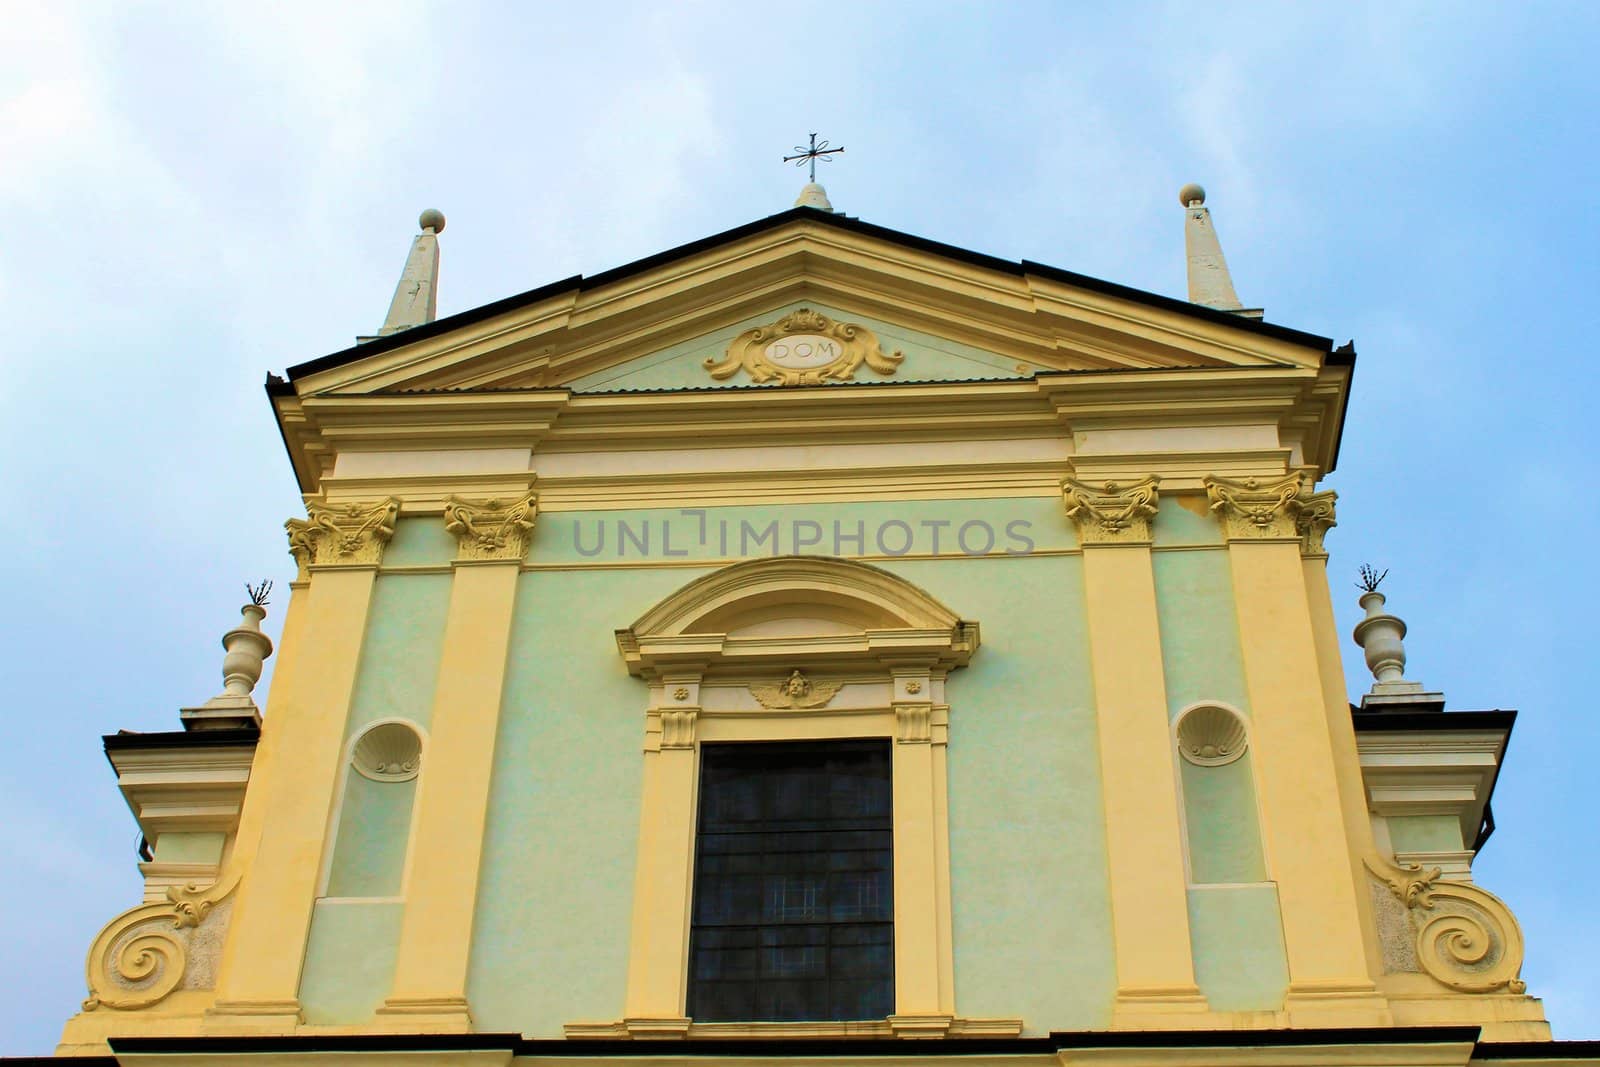 church facade in Brescia